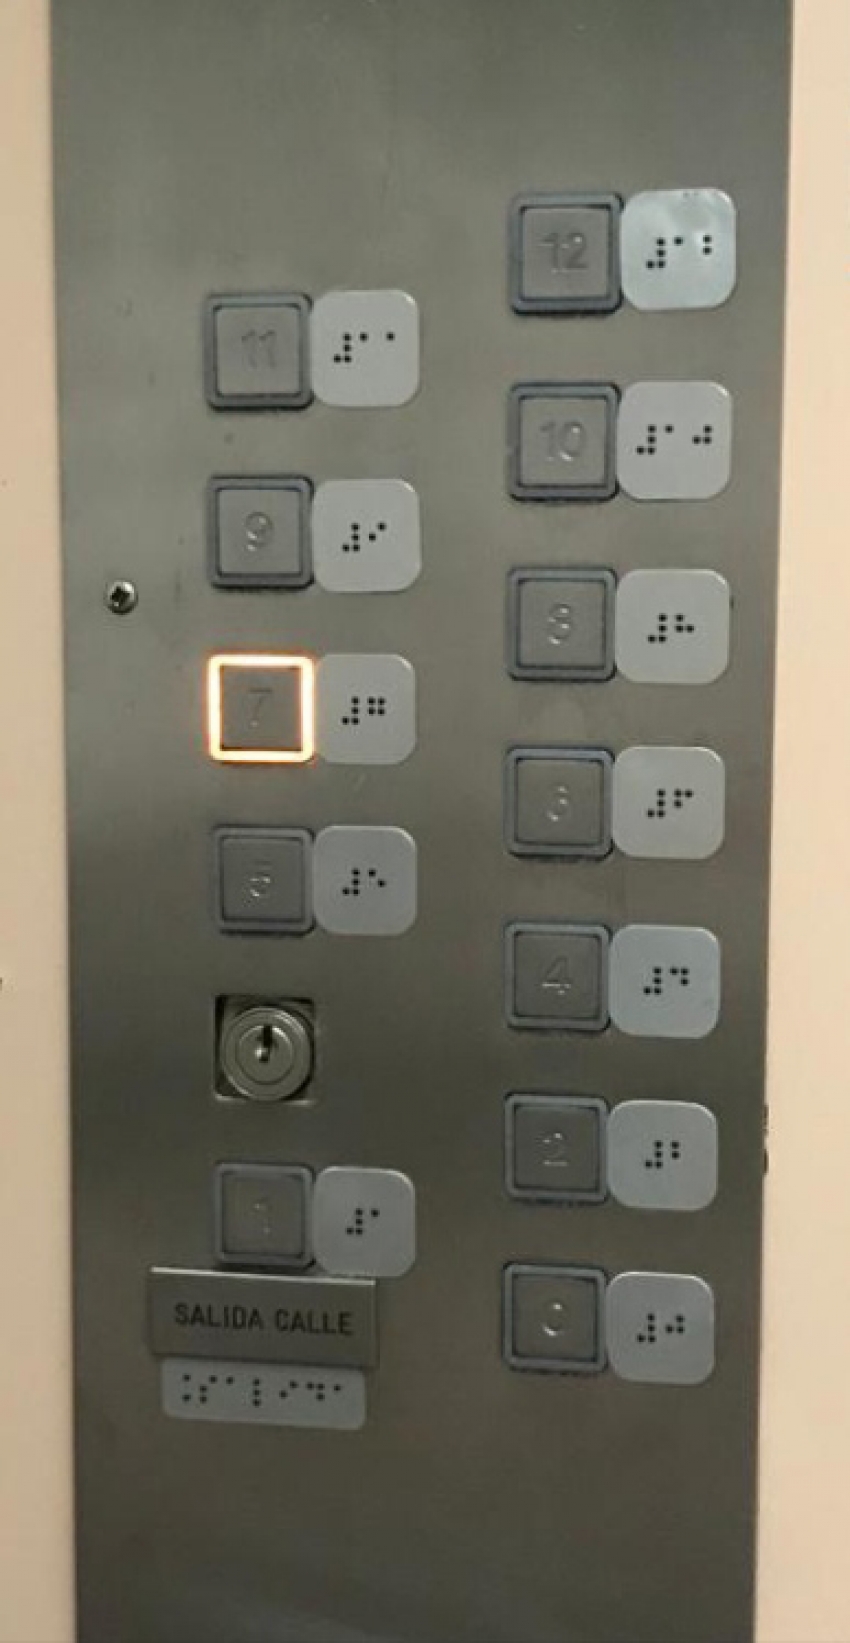 Instalación de señalética para personas con diversidad visual en los ascensores del edificio